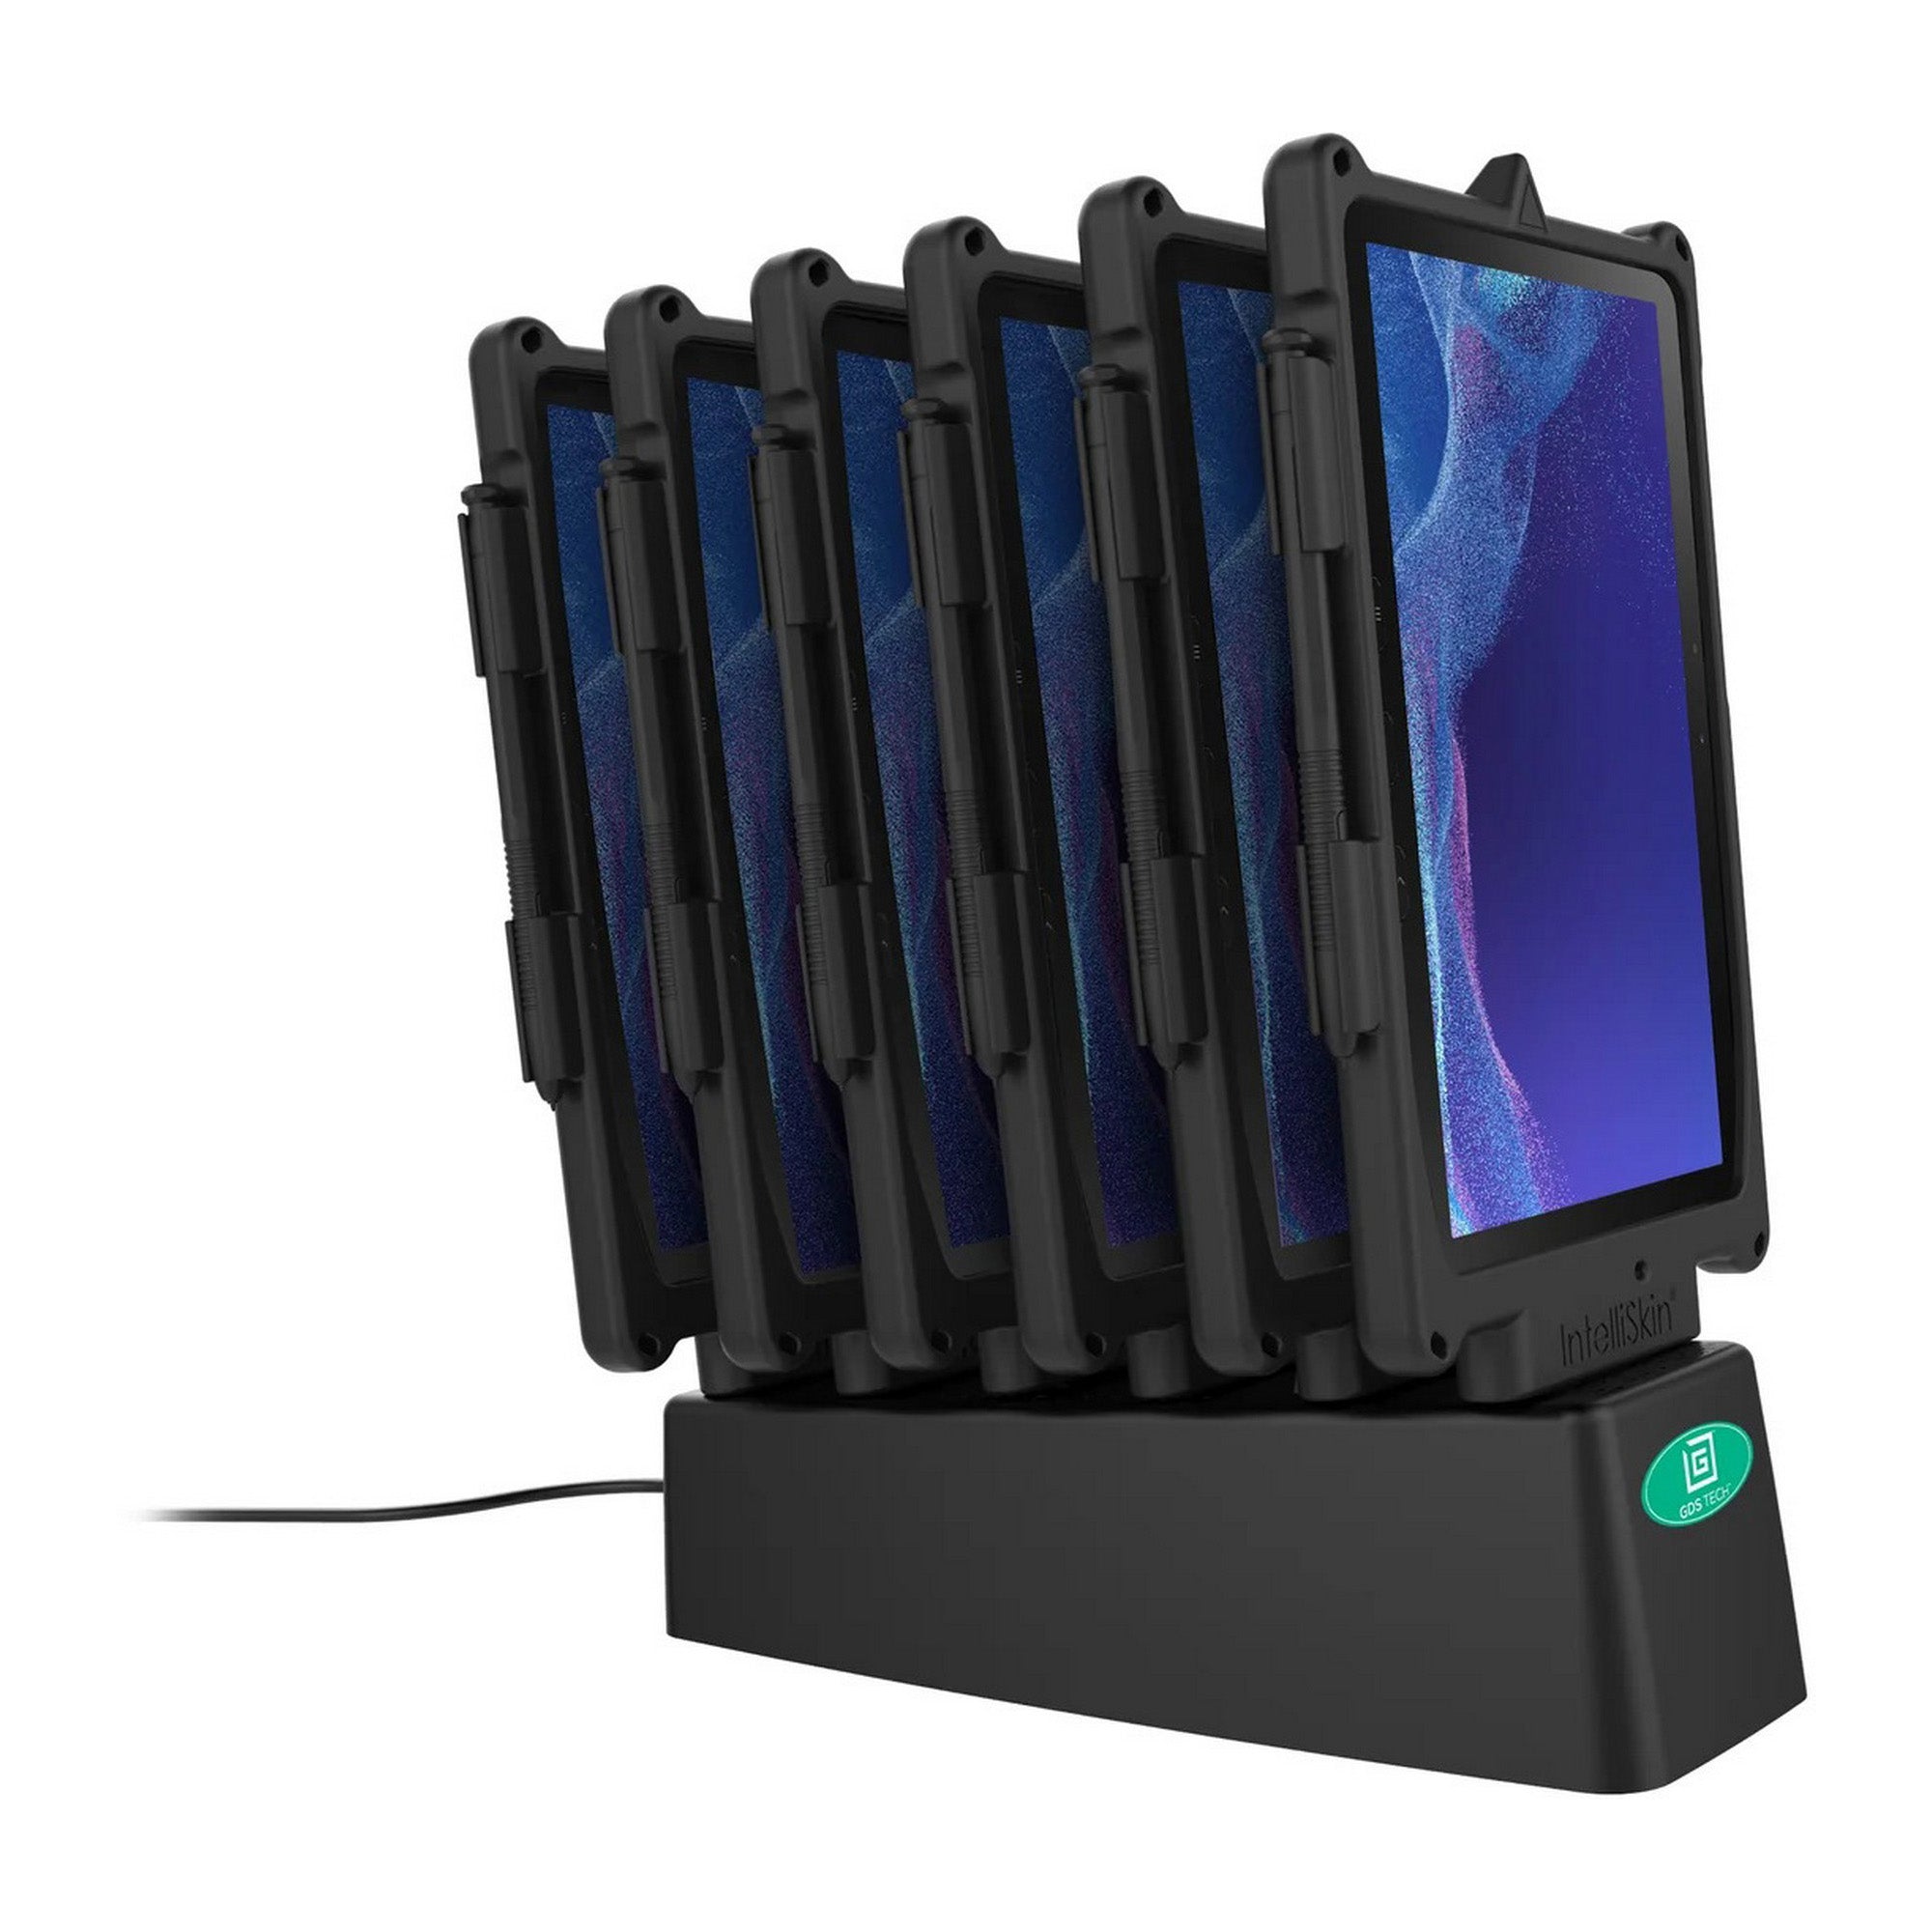 RAM GDS 6-Port Power Delivery Desktop Charger for IntelliSkin Next Gen